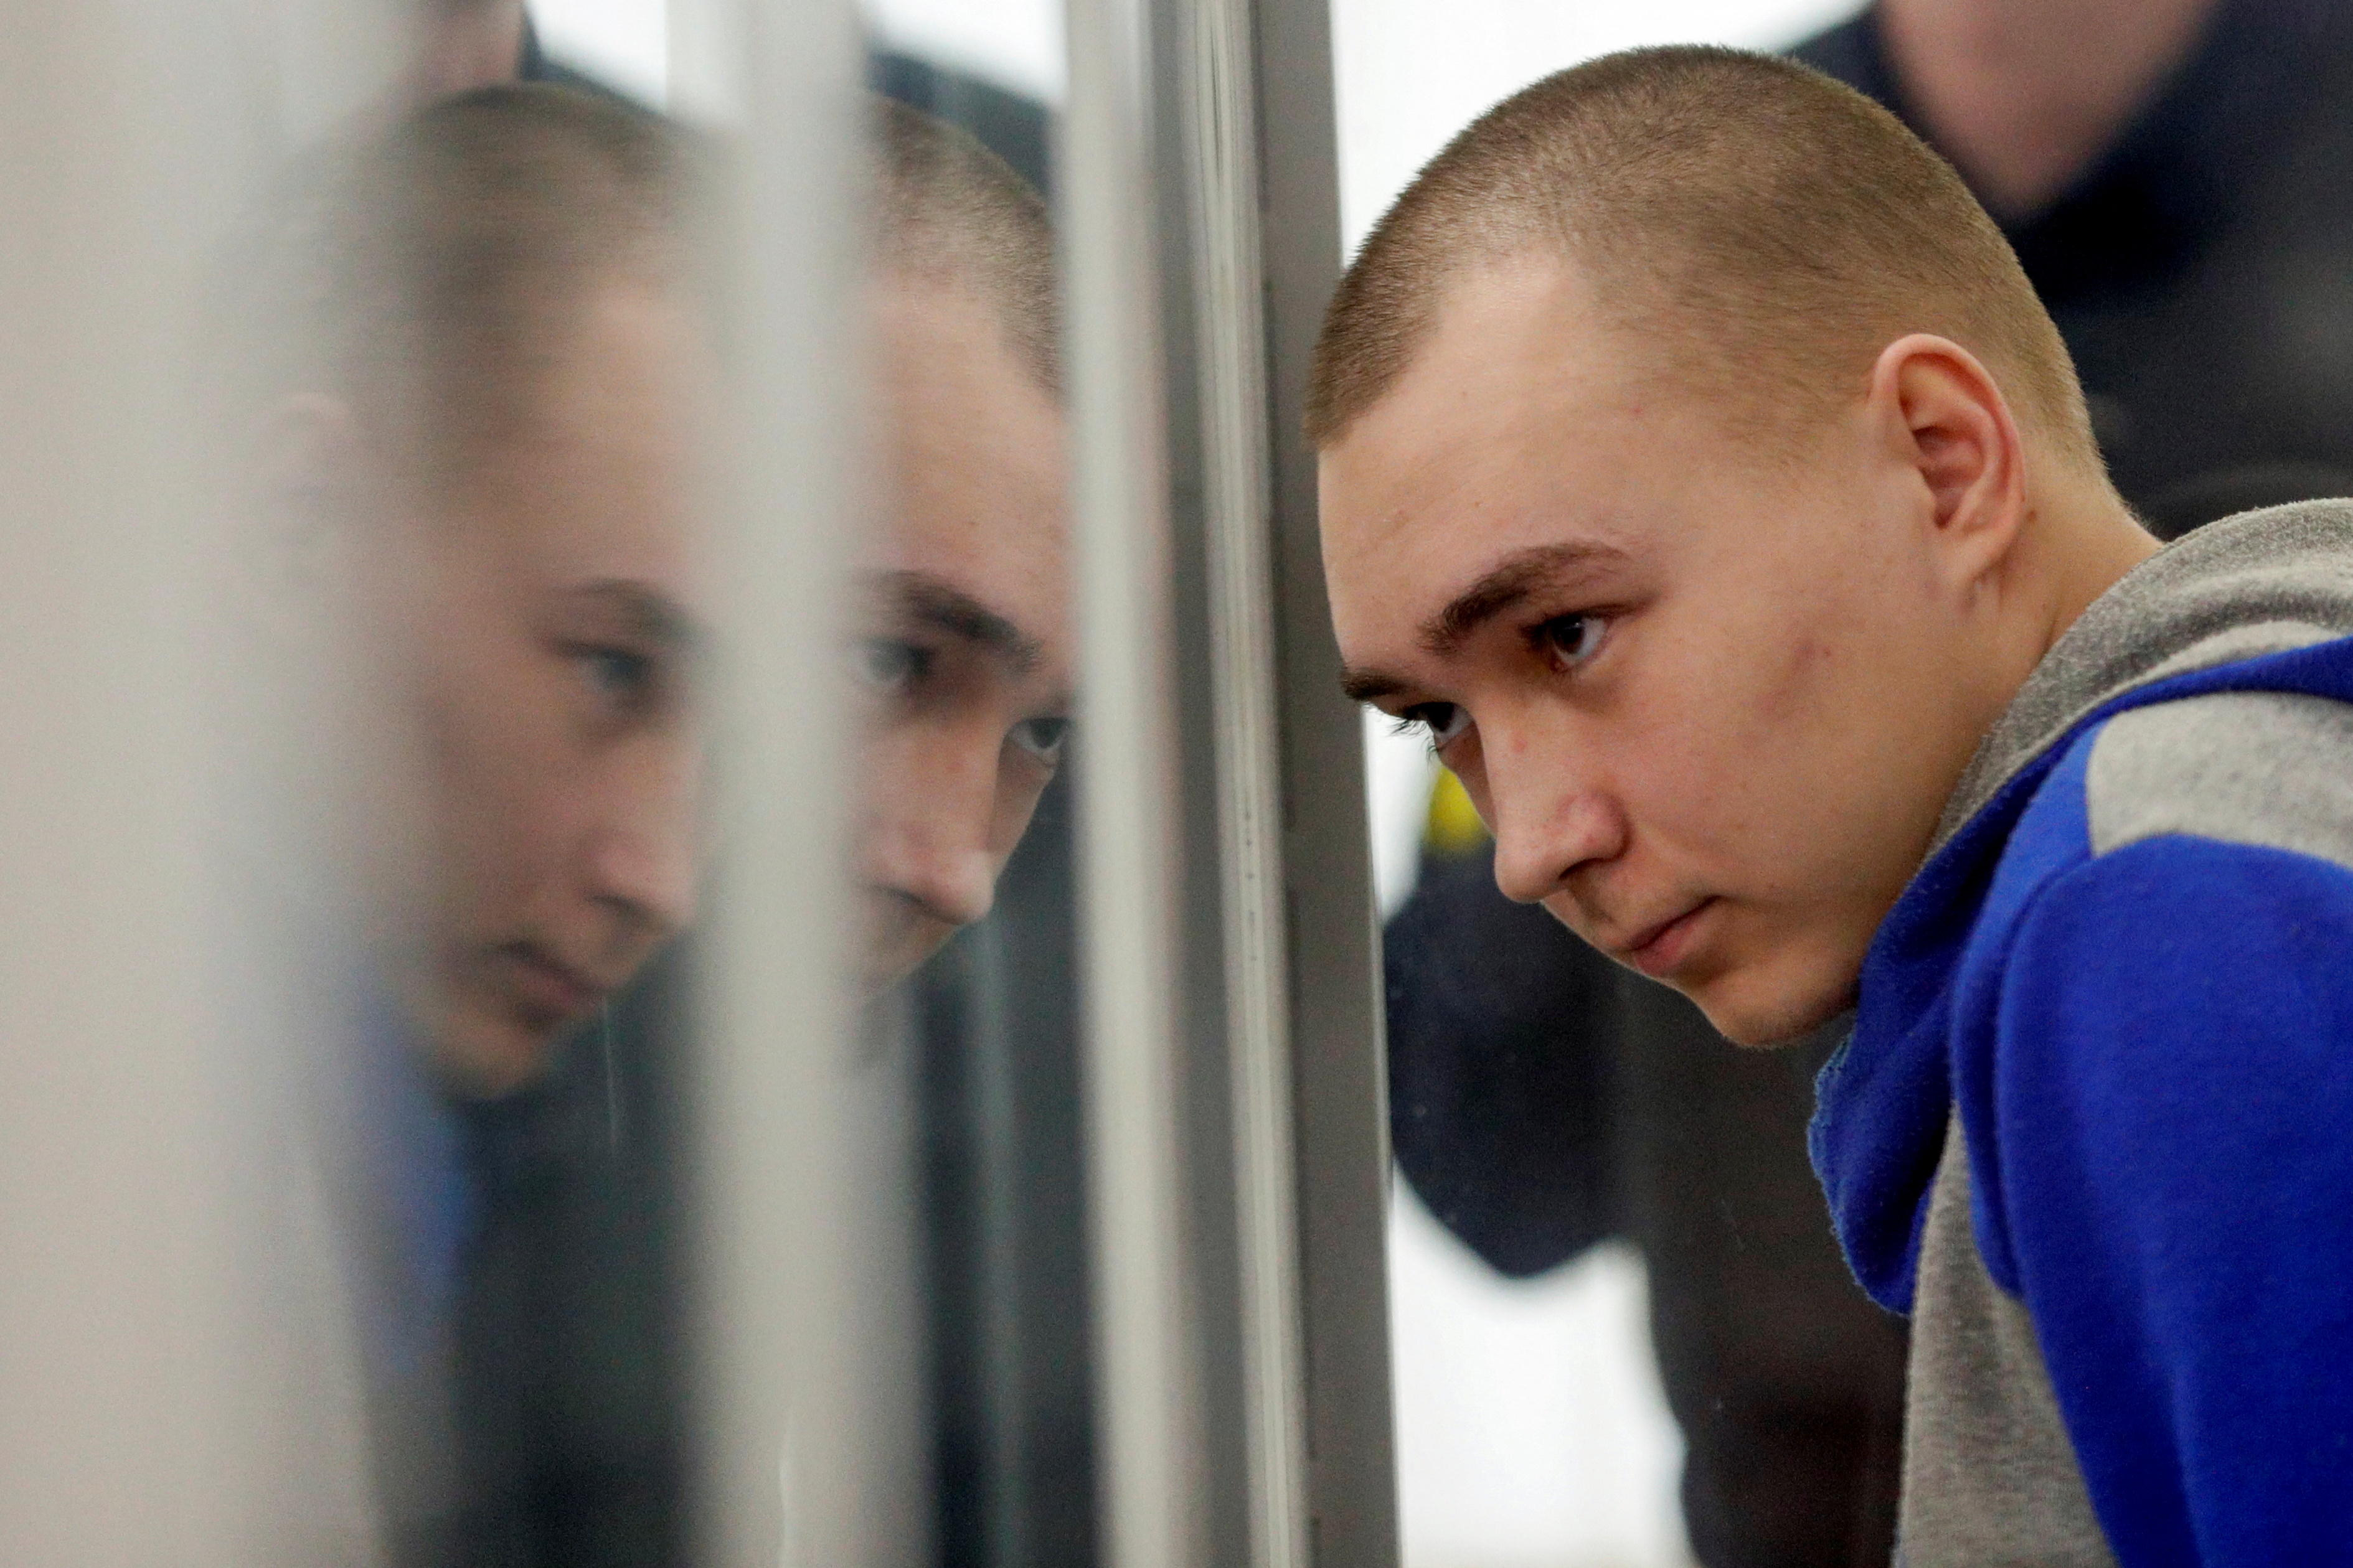 Vadim Shishimarin, 21, mengaku membunuh seorang warga sipil selama operasi di Sumy, Ukraina utara (REUTERS / Viacheslav Ratynskyi)